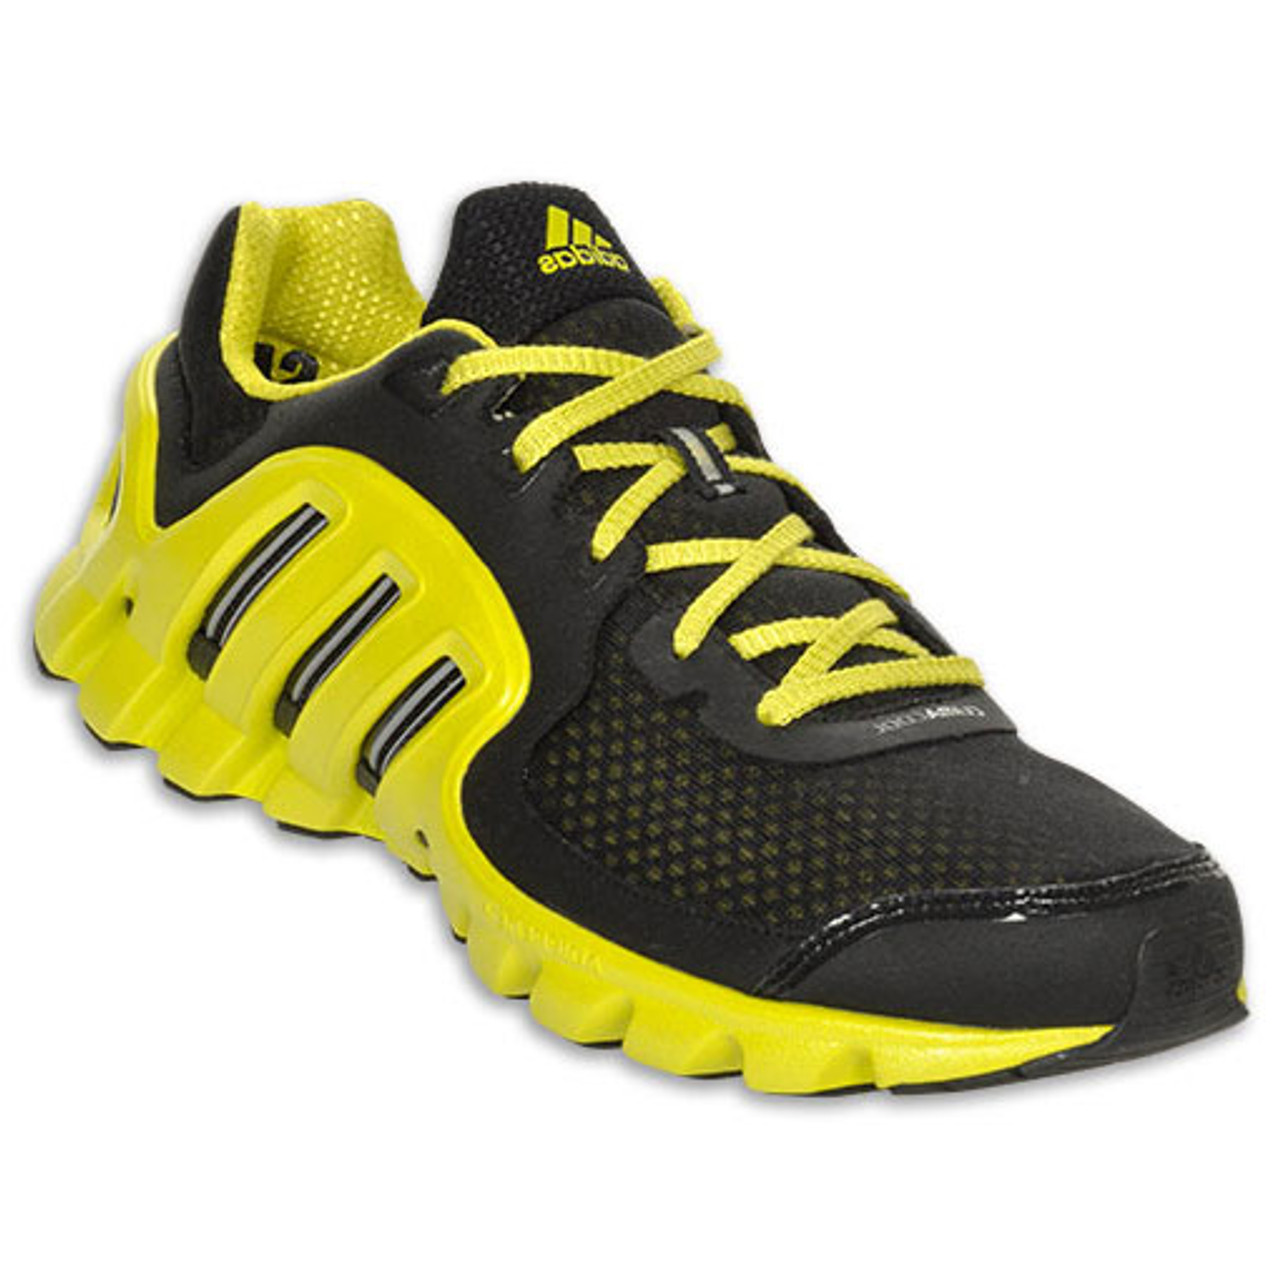 Adidas Clima Xtreme Black/Lab Lime - | Adidas Men's Athletic Shoes & More - Shoolu.com | Shoolu.com